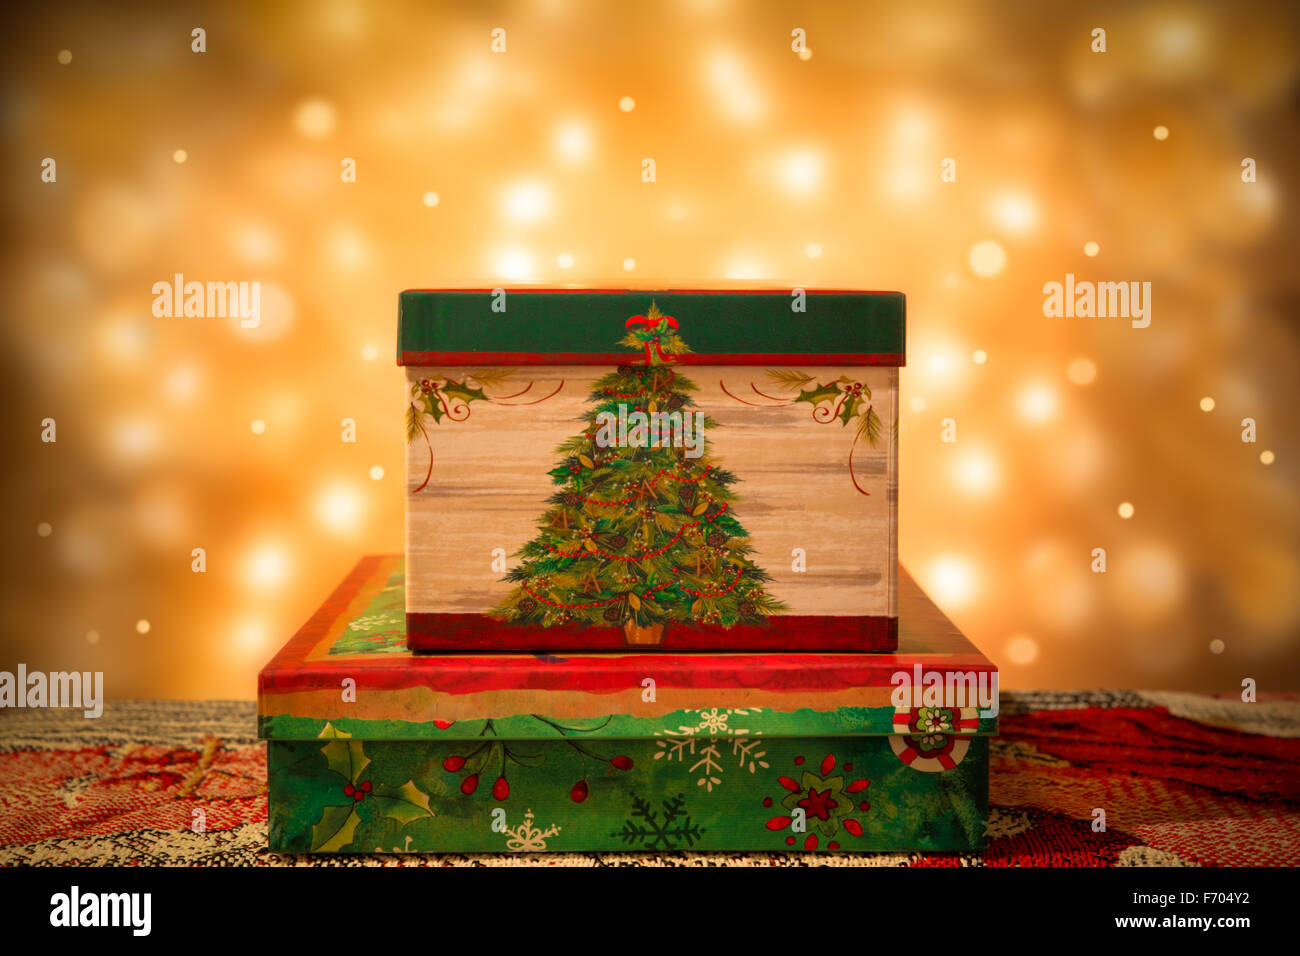 Decorative per le vacanze di Natale confezioni regalo con luci d'oro in background Foto Stock